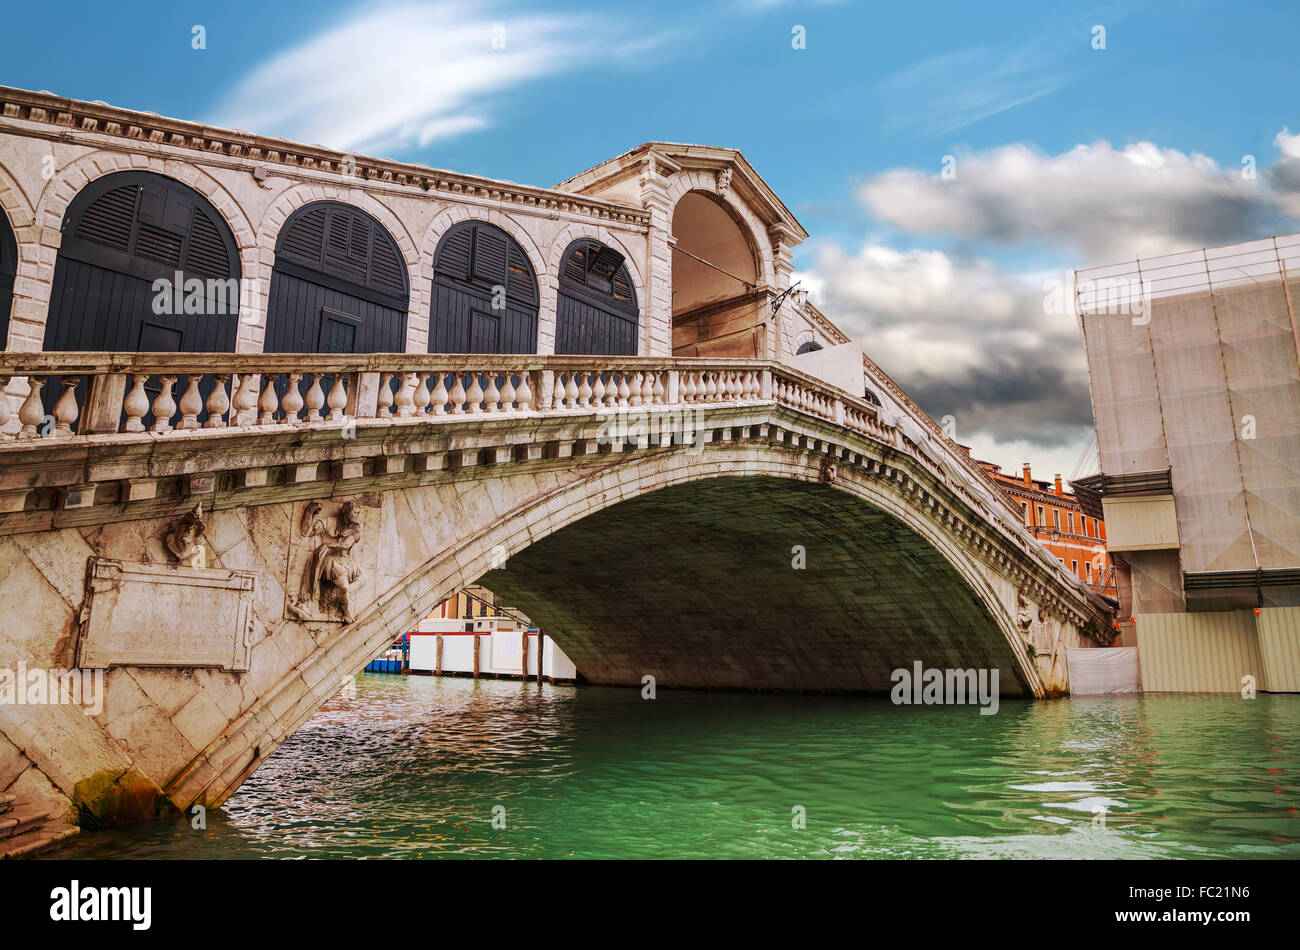 Rialto bridge (Ponte di Rialto) in Venice, Italy Stock Photo